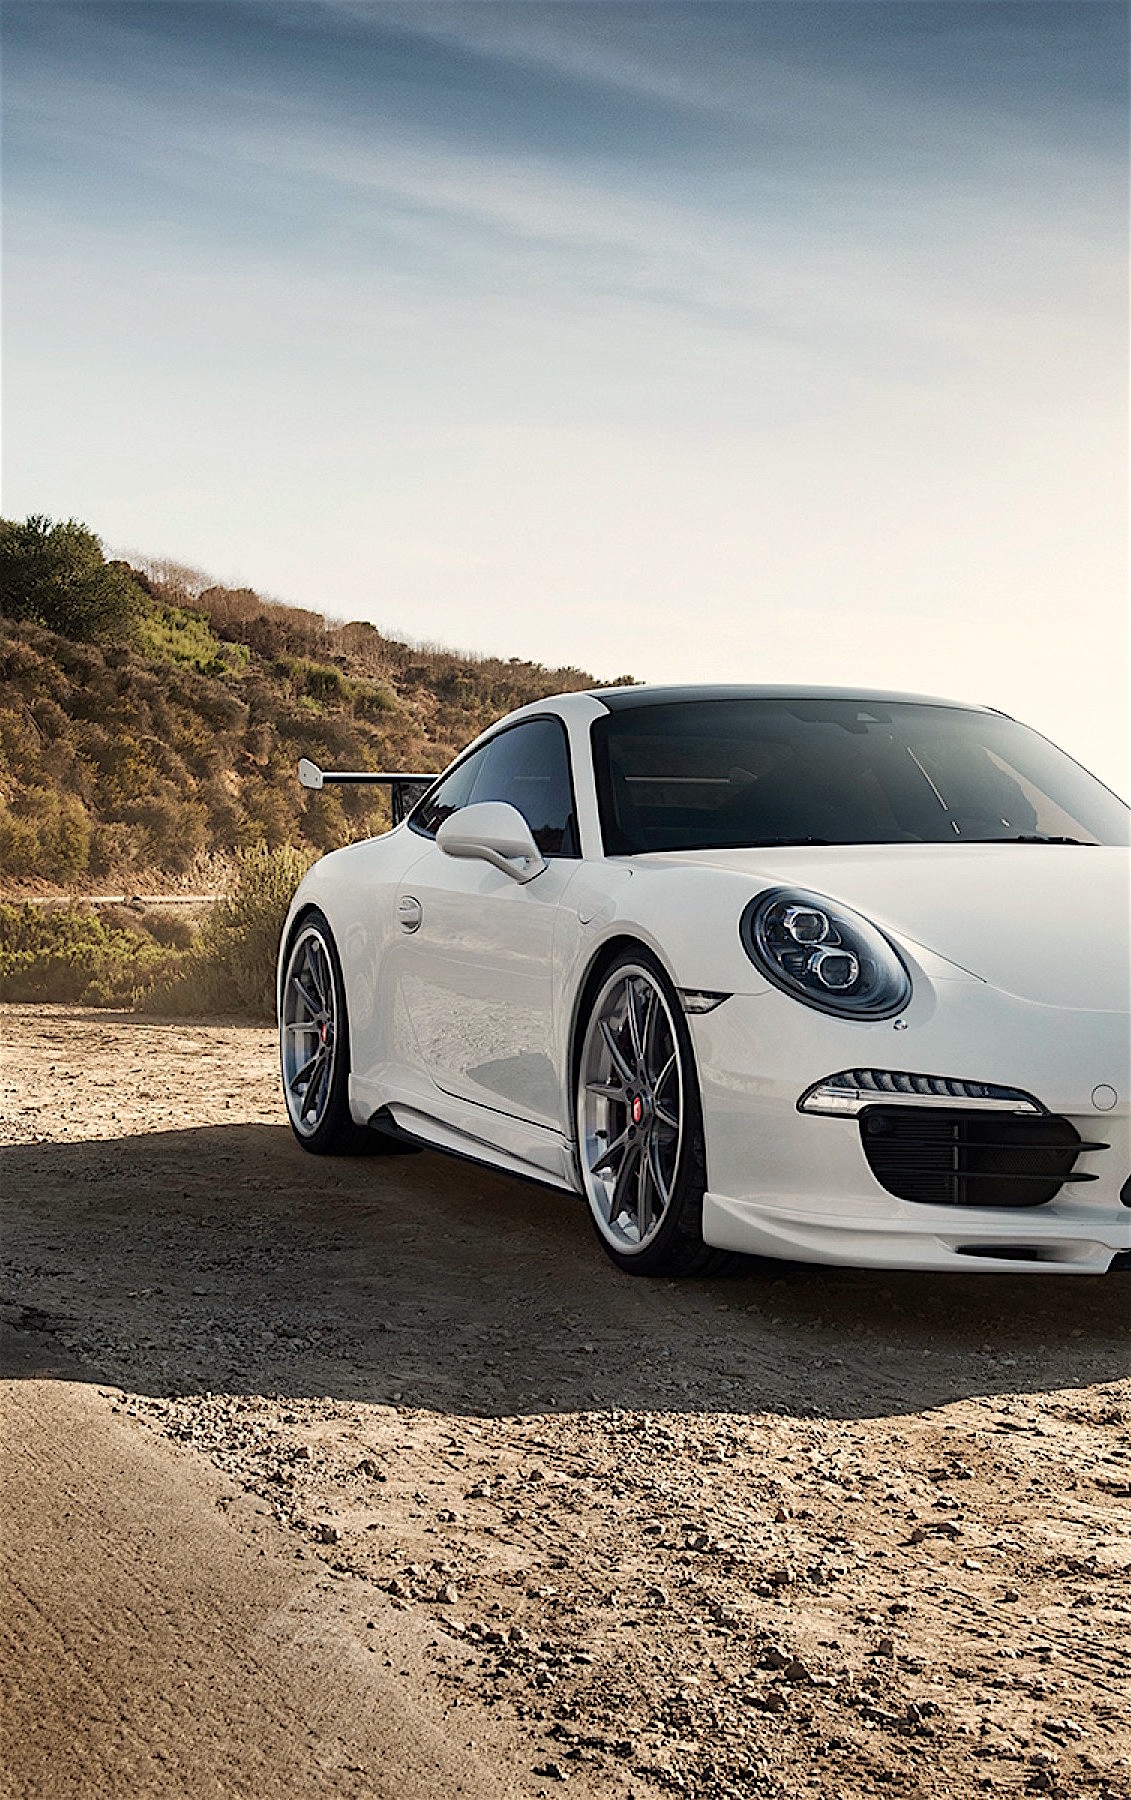 Porsche 911 White Sportscar Mountain Road Sky - Porsche Car Wallpaper For Mobile - HD Wallpaper 